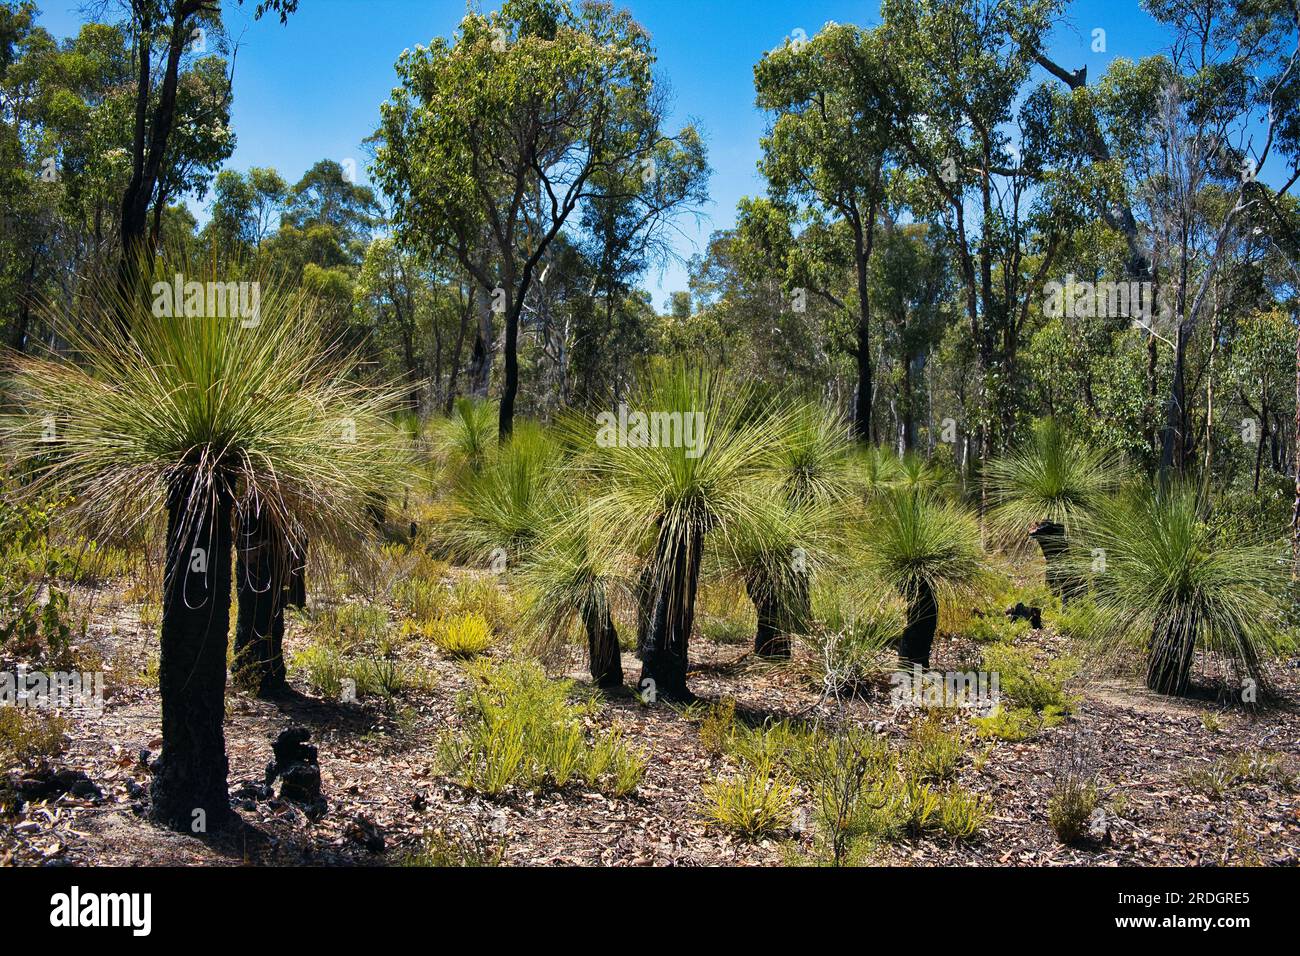 Alberi d'erba (Xanthorrhoea) con tronchi neri nella foresta nativa con jarrah, marri e alberi di corteccia di polveri nel parco nazionale di Avon Valley, Australia Occidentale Foto Stock